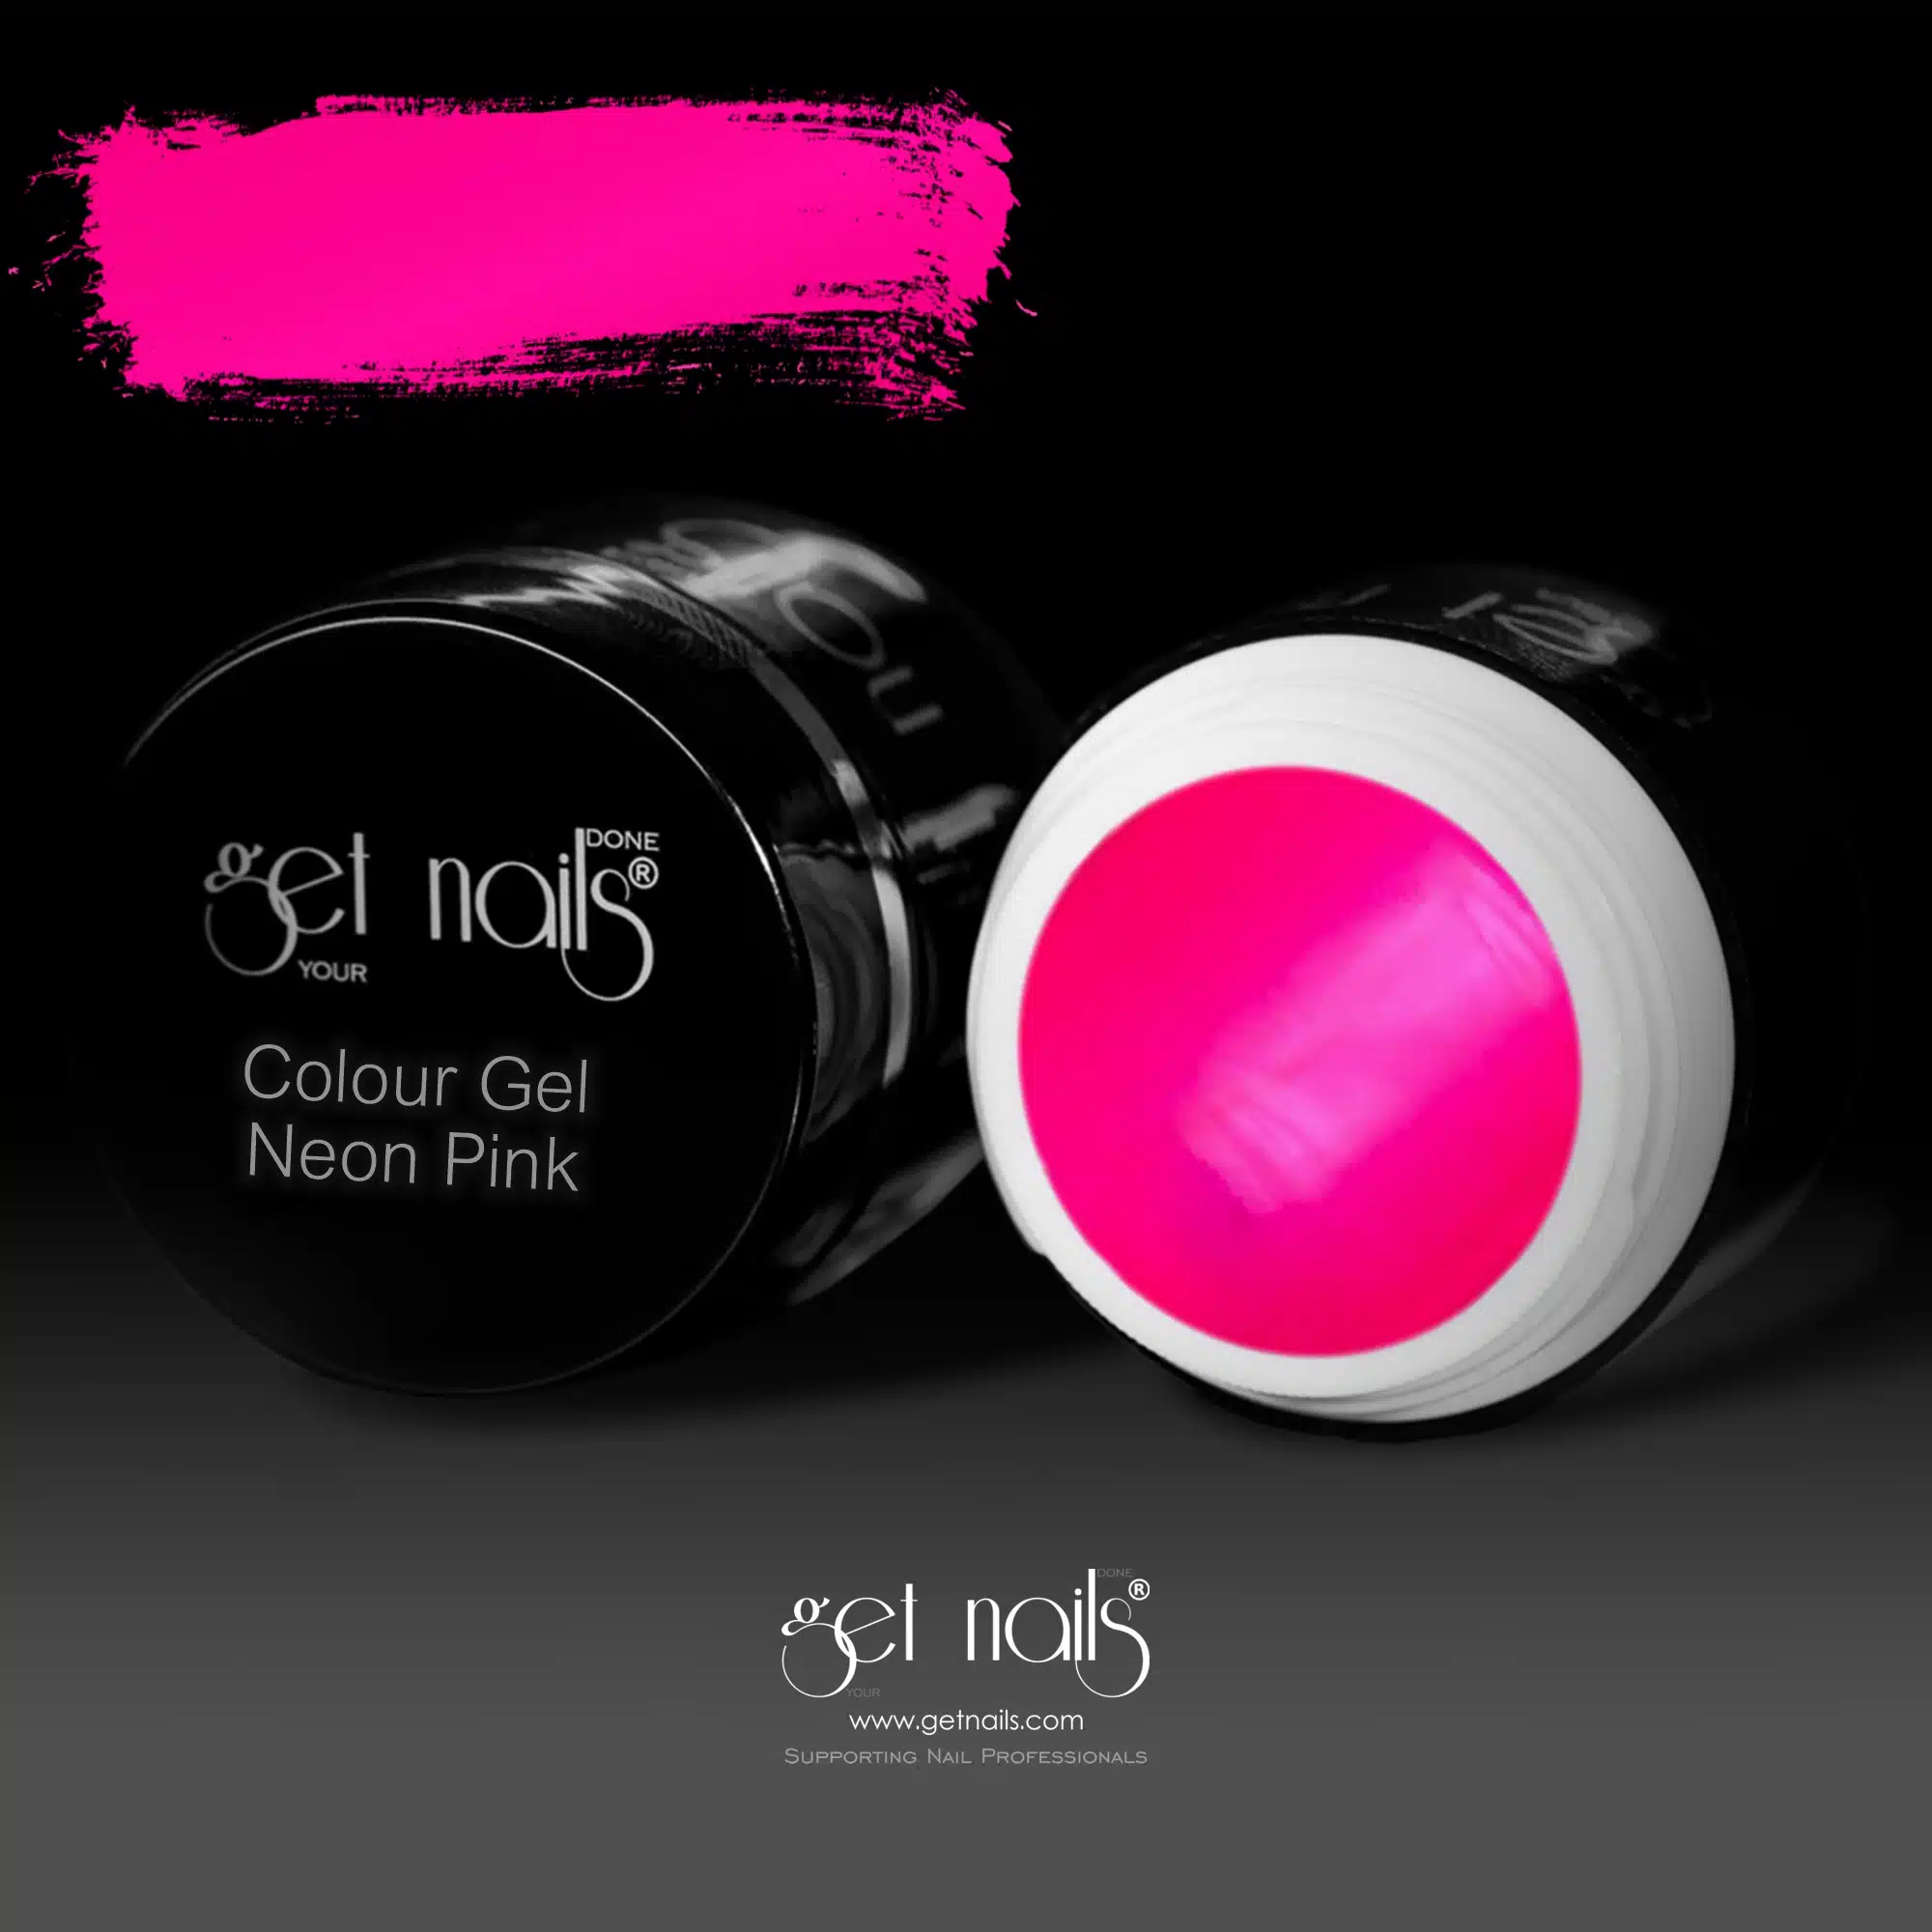 Get Nails Austria - Colour Gel Neon Pink 5g